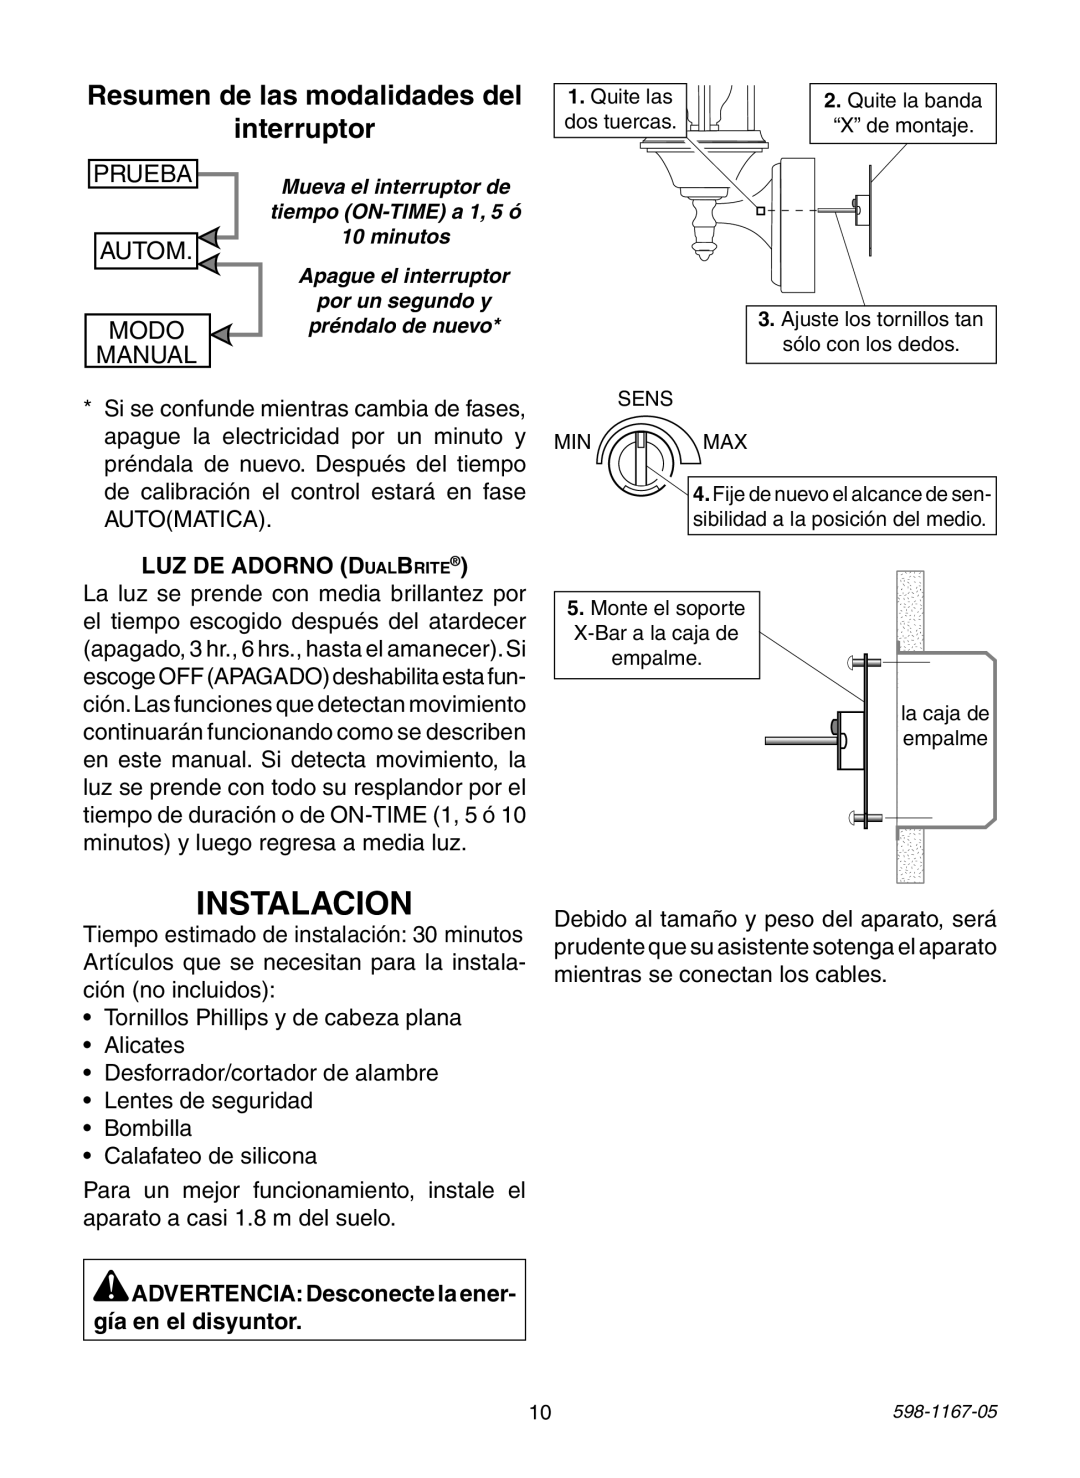 Heath Zenith PF-4197-WH Instalacion, Resumen de las modalidades del interruptor, LUZ DE ADORNO DualBrite, Prueba, Autom 